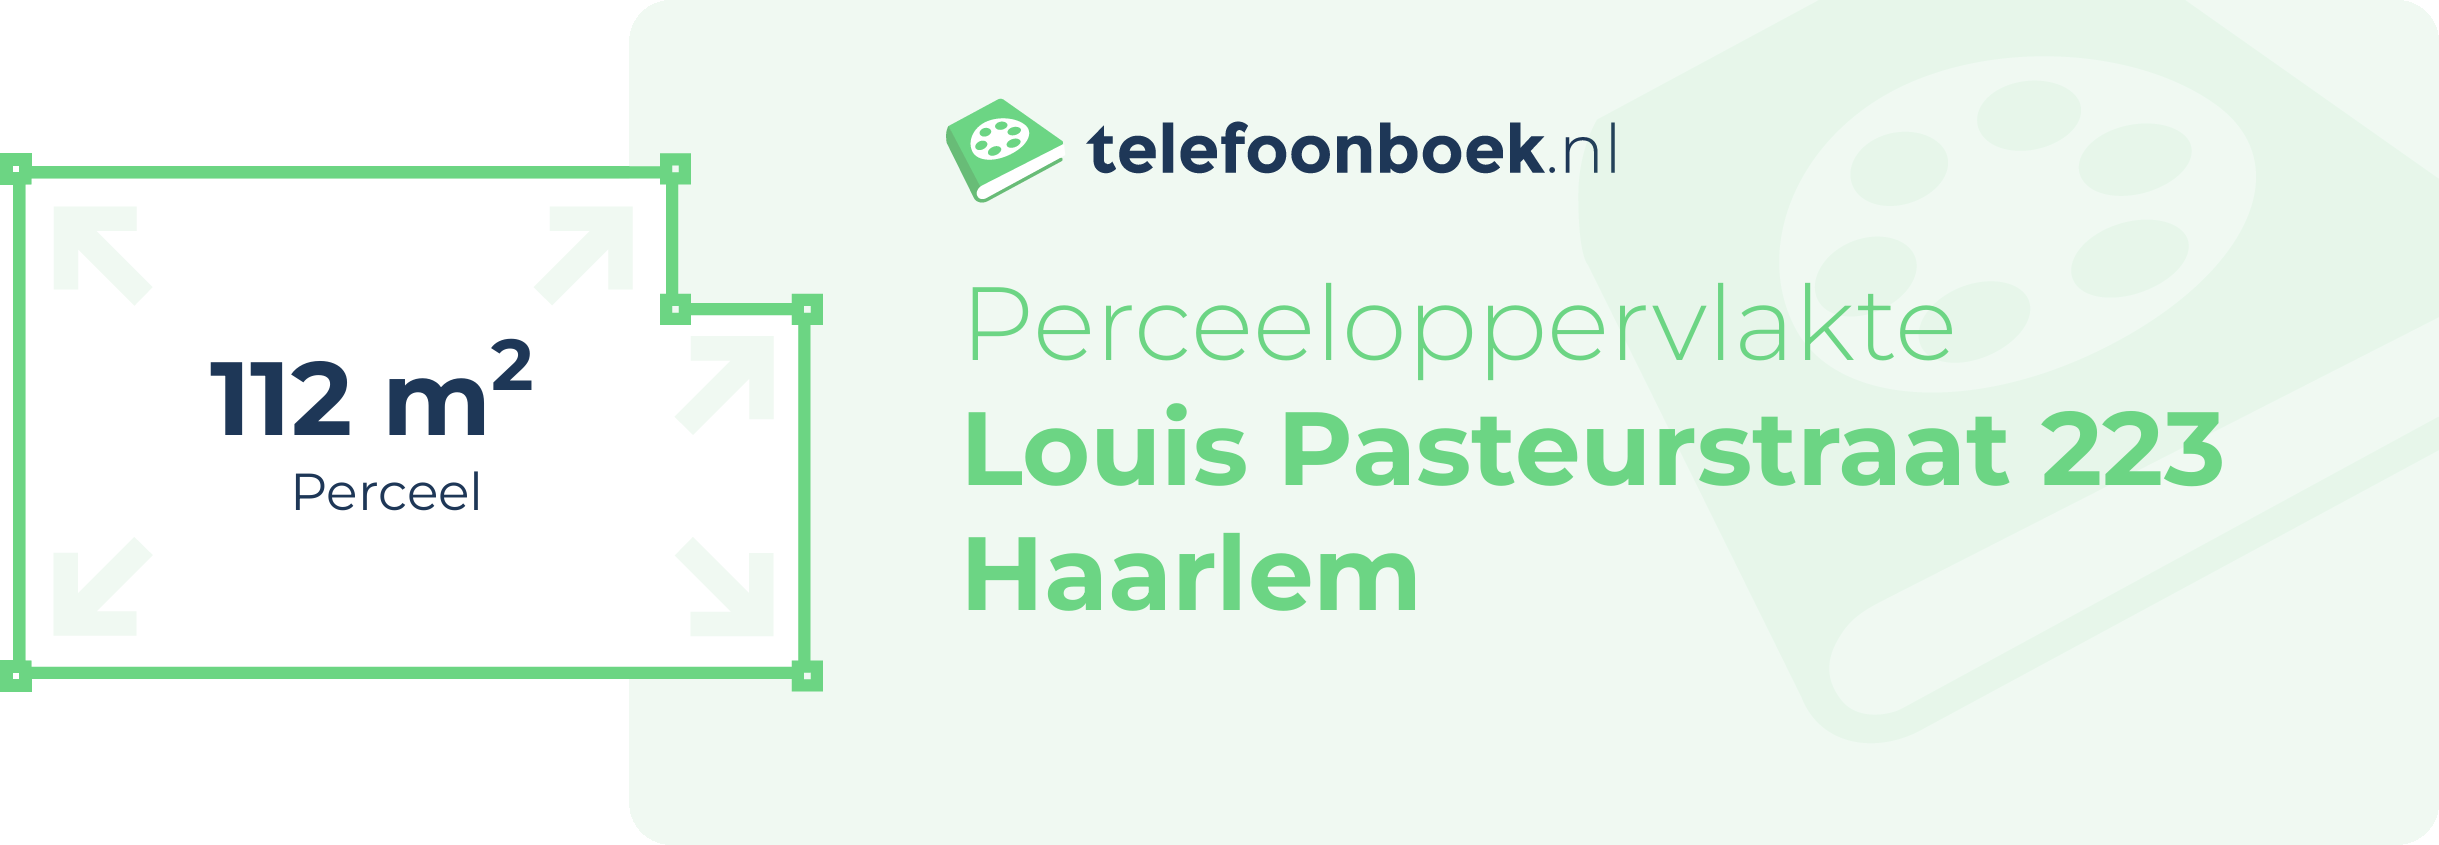 Perceeloppervlakte Louis Pasteurstraat 223 Haarlem